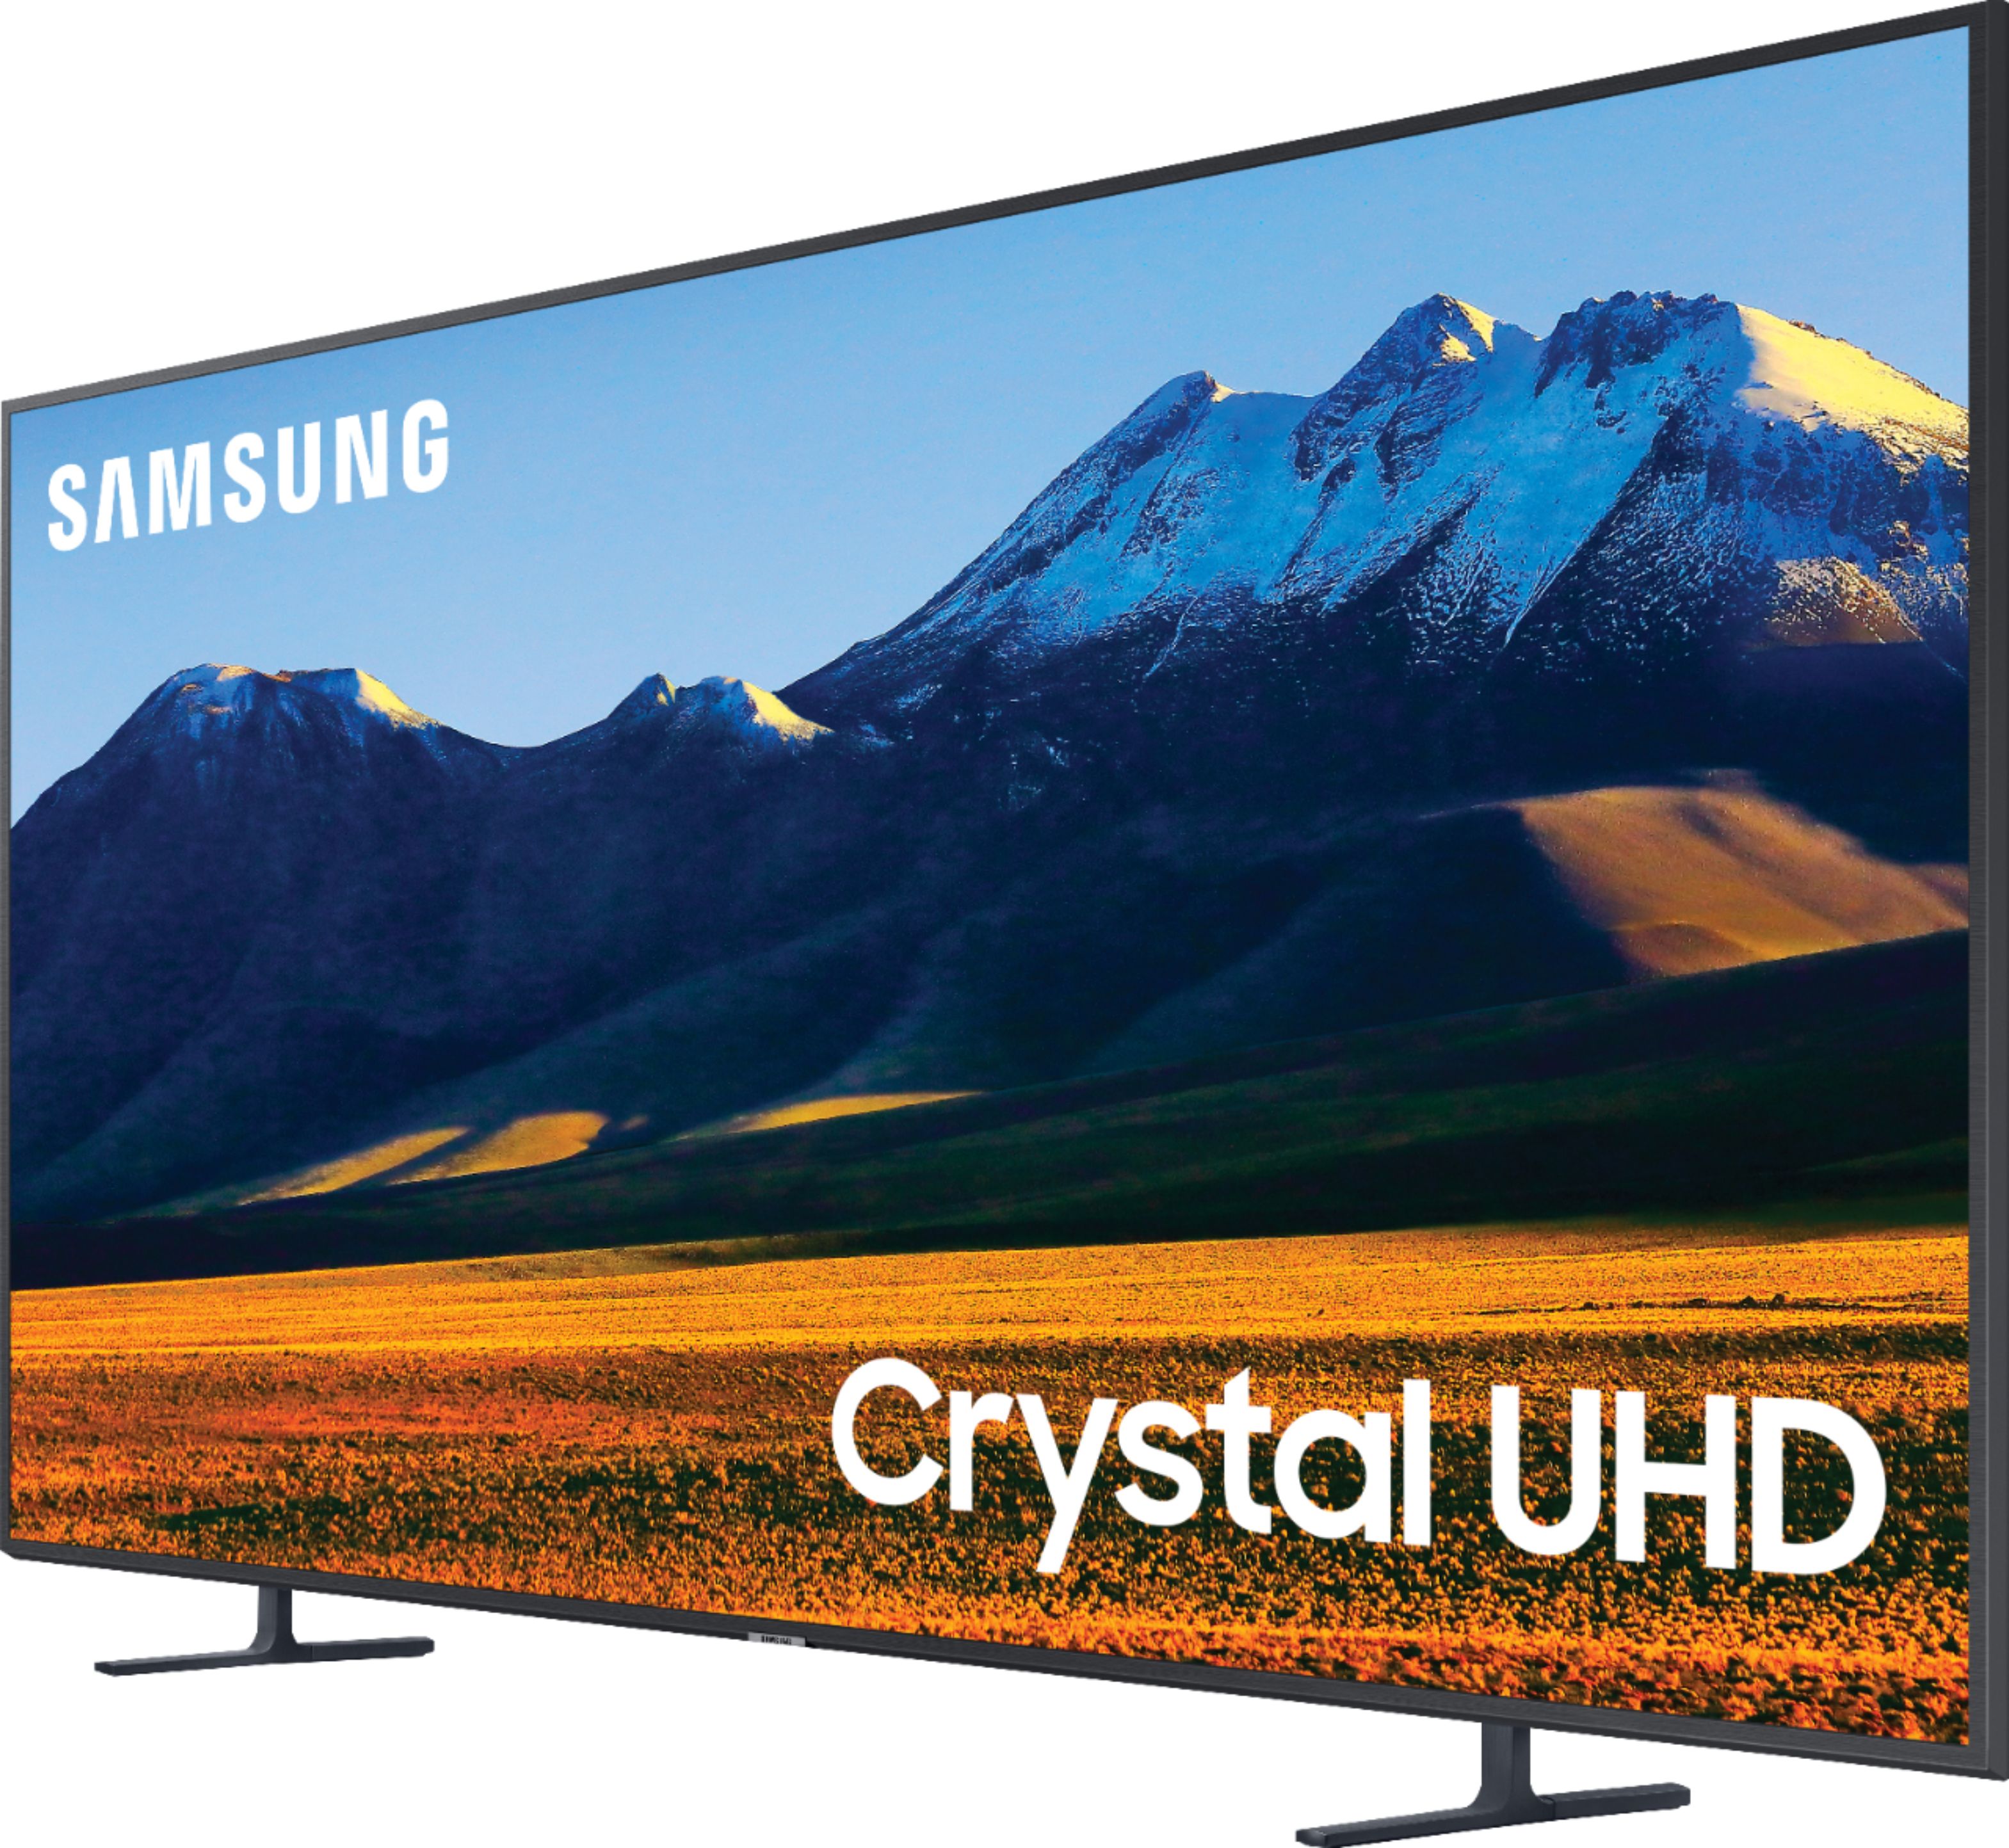 Best Buy Samsung 82 Class 9 Series Led 4k Uhd Smart Tizen Tv Un82ru9000fxza